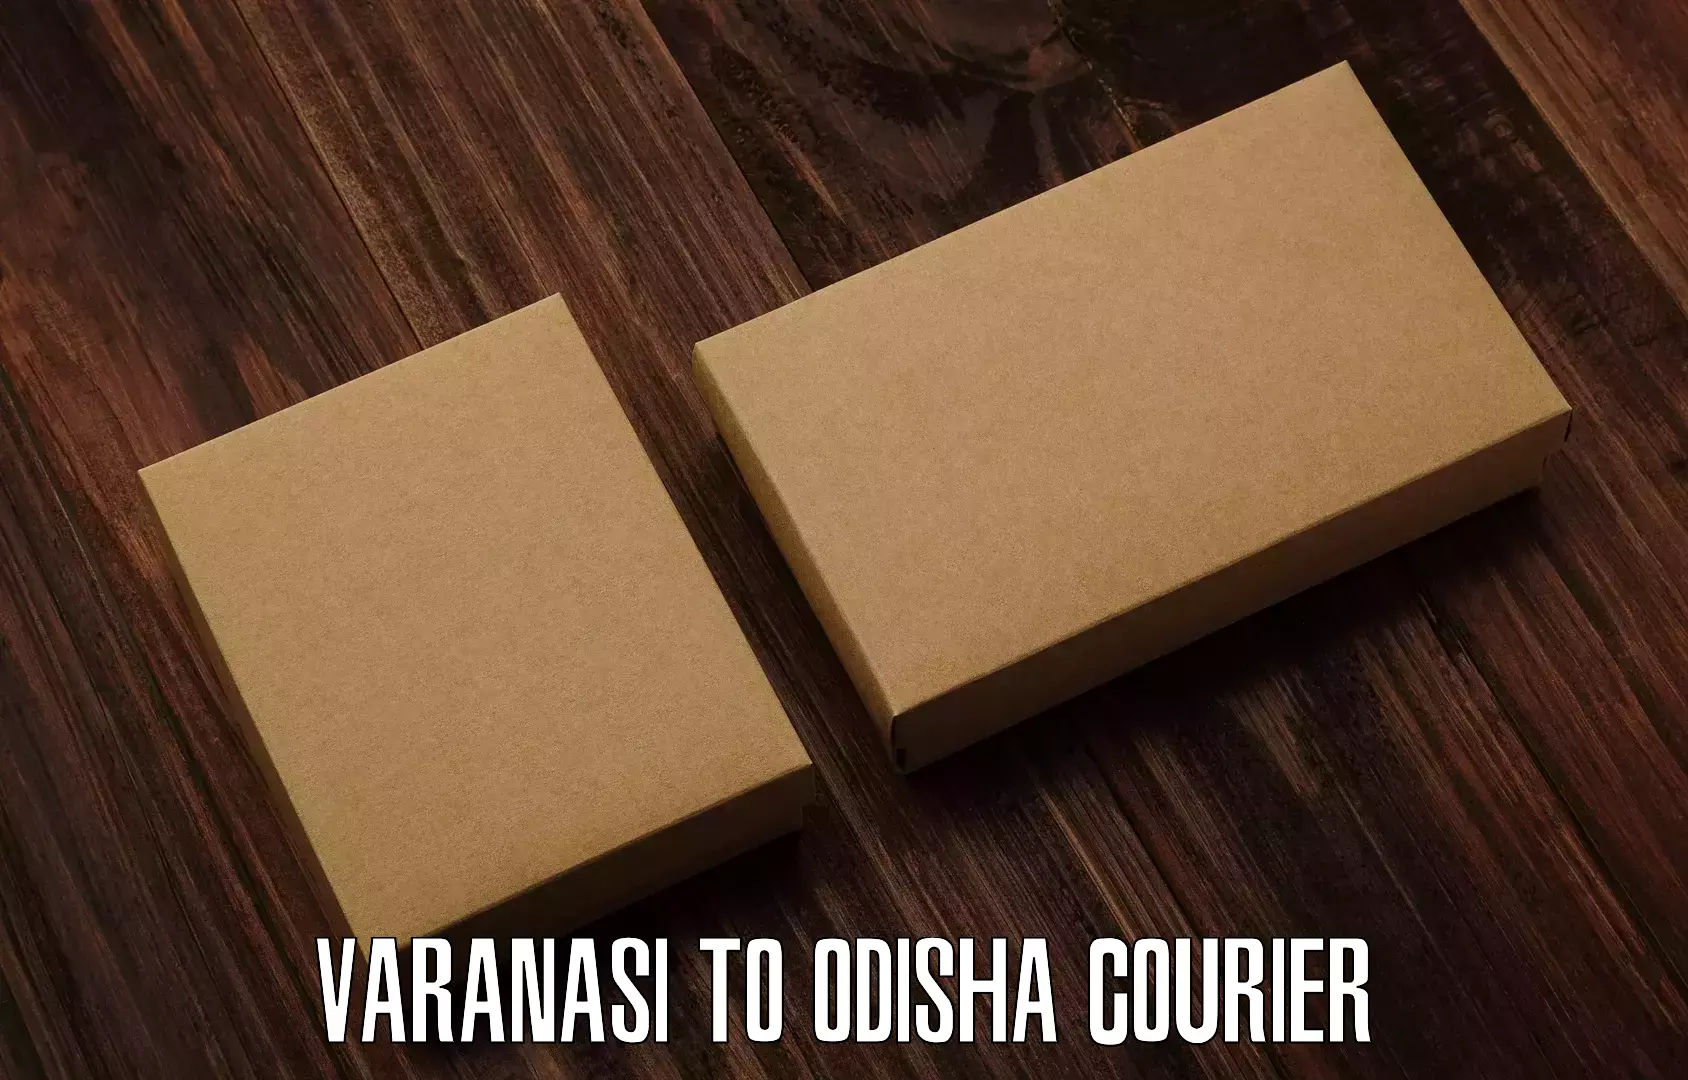 Professional parcel services Varanasi to Duburi